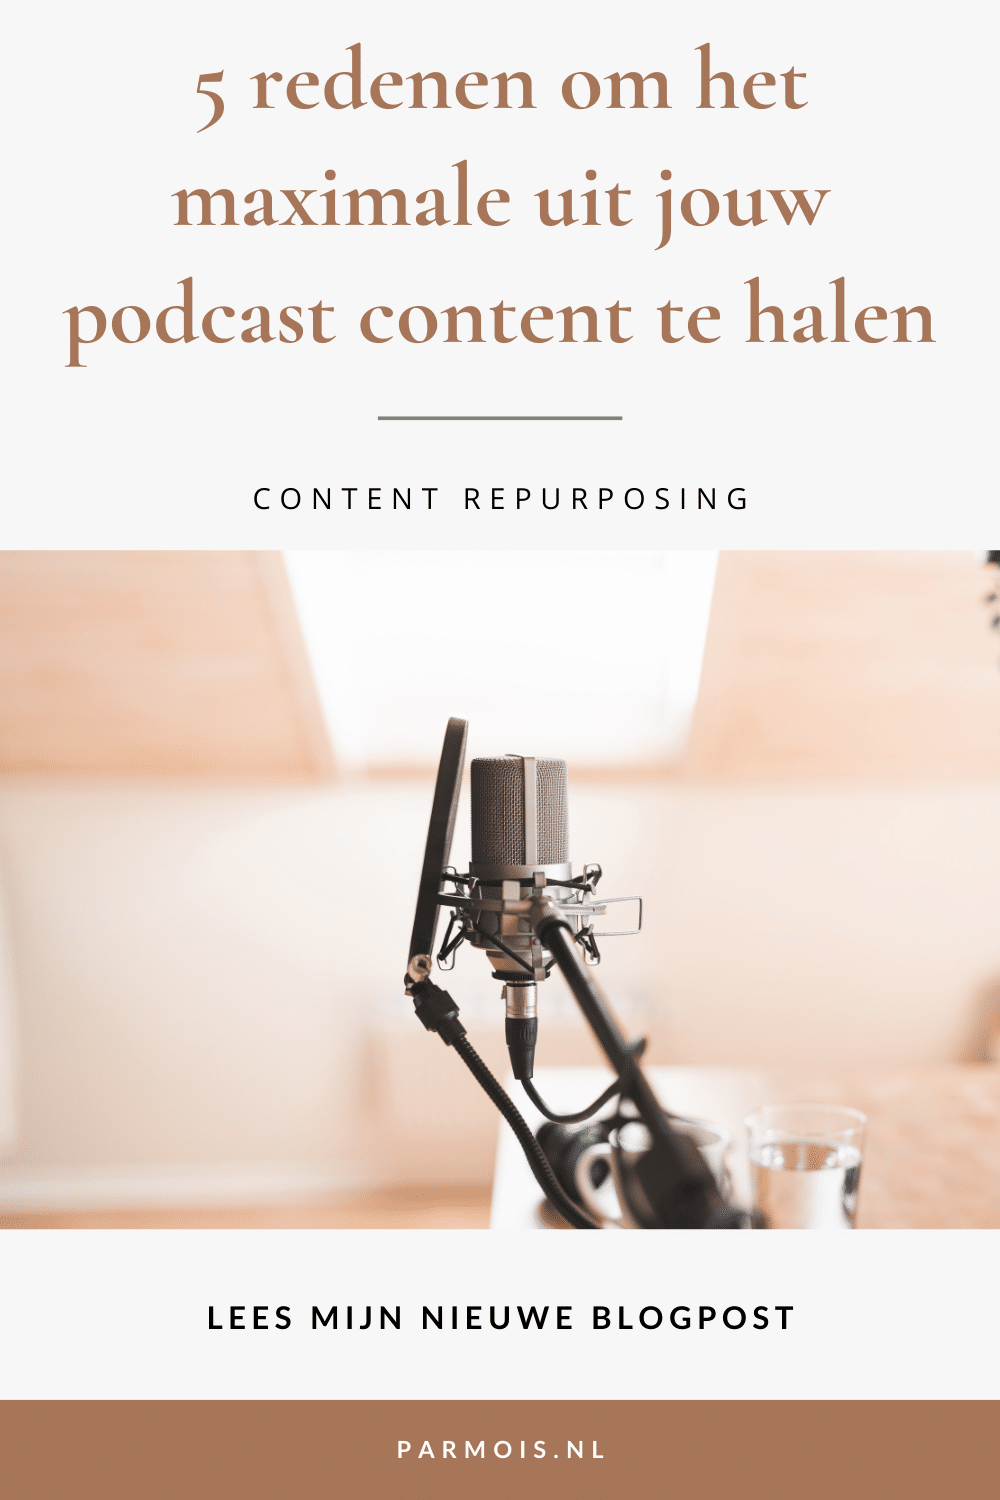 Podcast content repurposing: haal jij het maximale uit jouw podcast content?